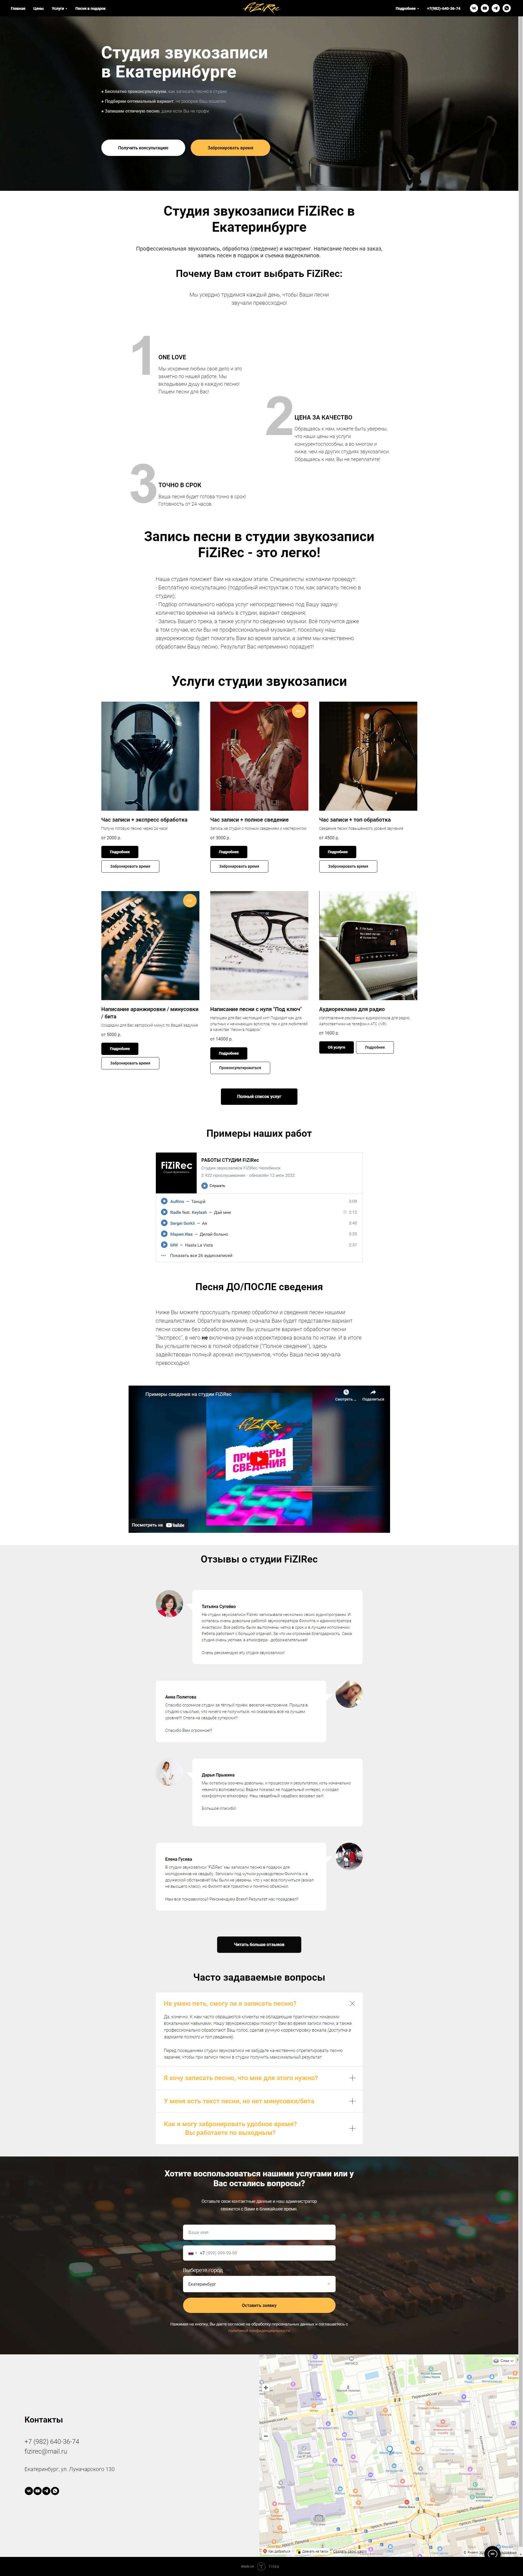 Пример ekb.fizirec.ru сайта из рекламной выдачи